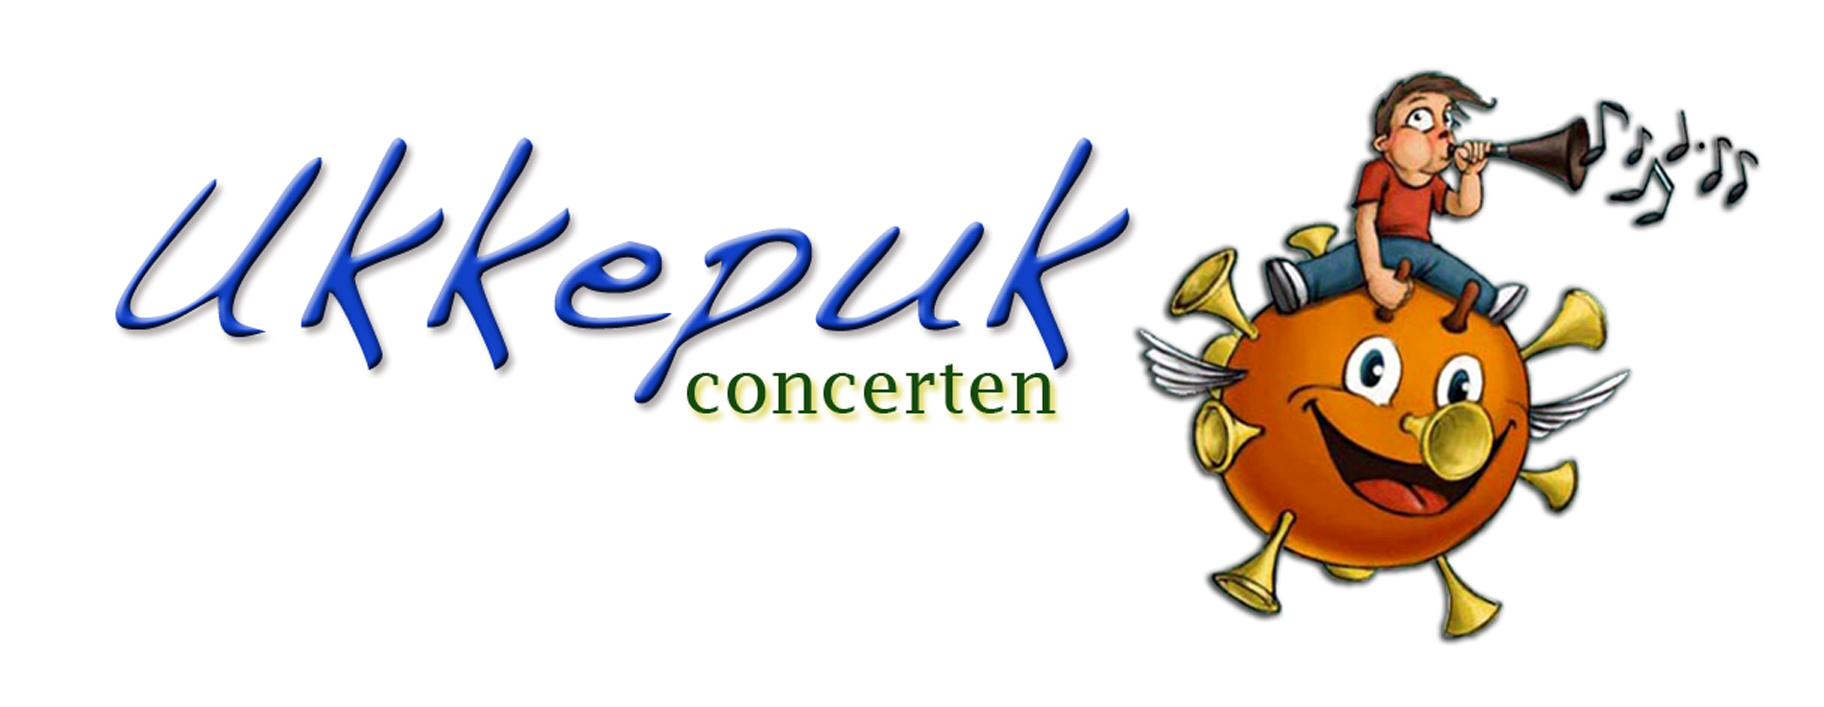 Ukkepuk Logo 2015